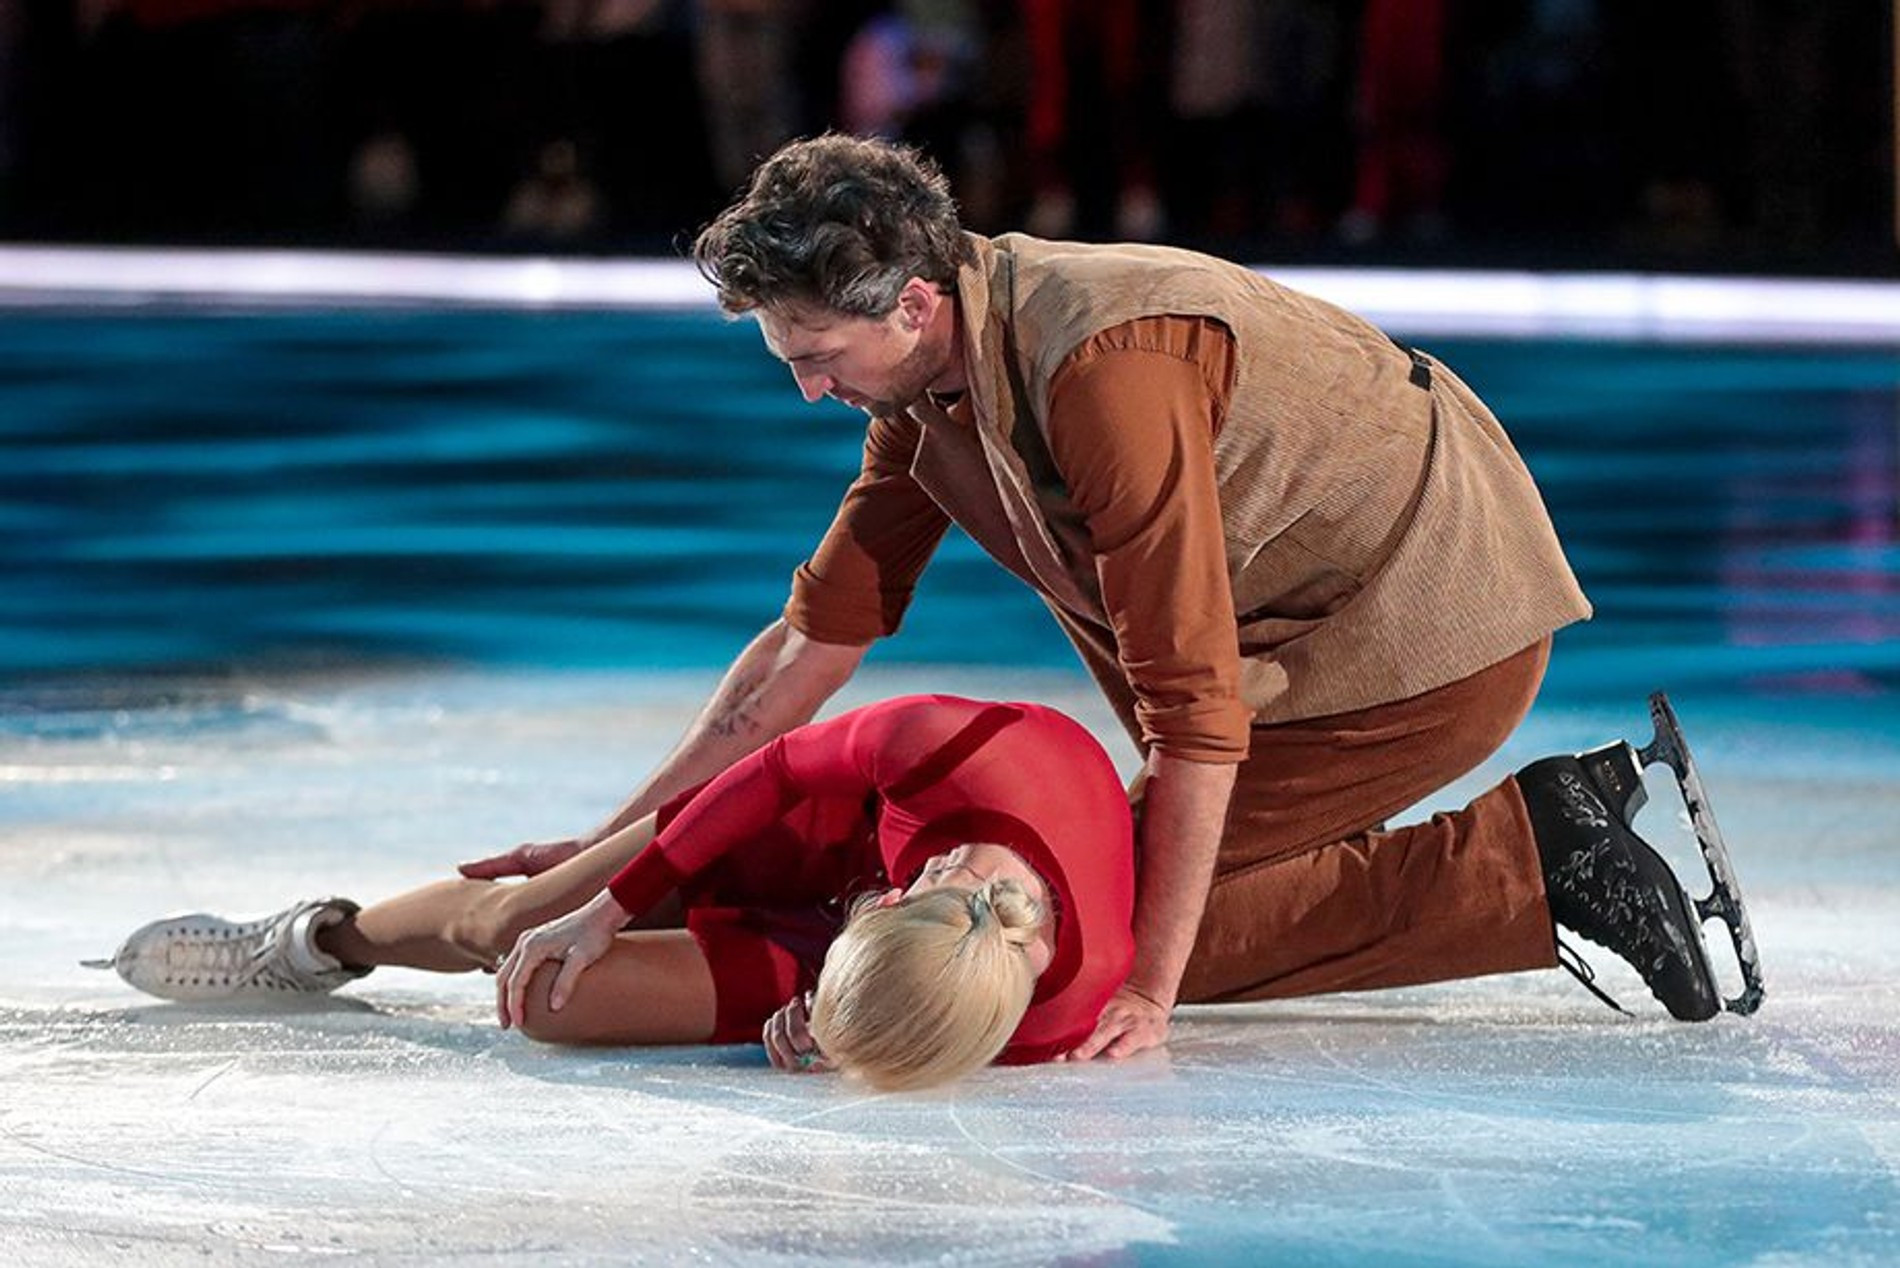 Татьяна Тотьмянина и Иван Колесников упали на льду на съемках «Ледникового периода»
Фото: «Чемпионат»